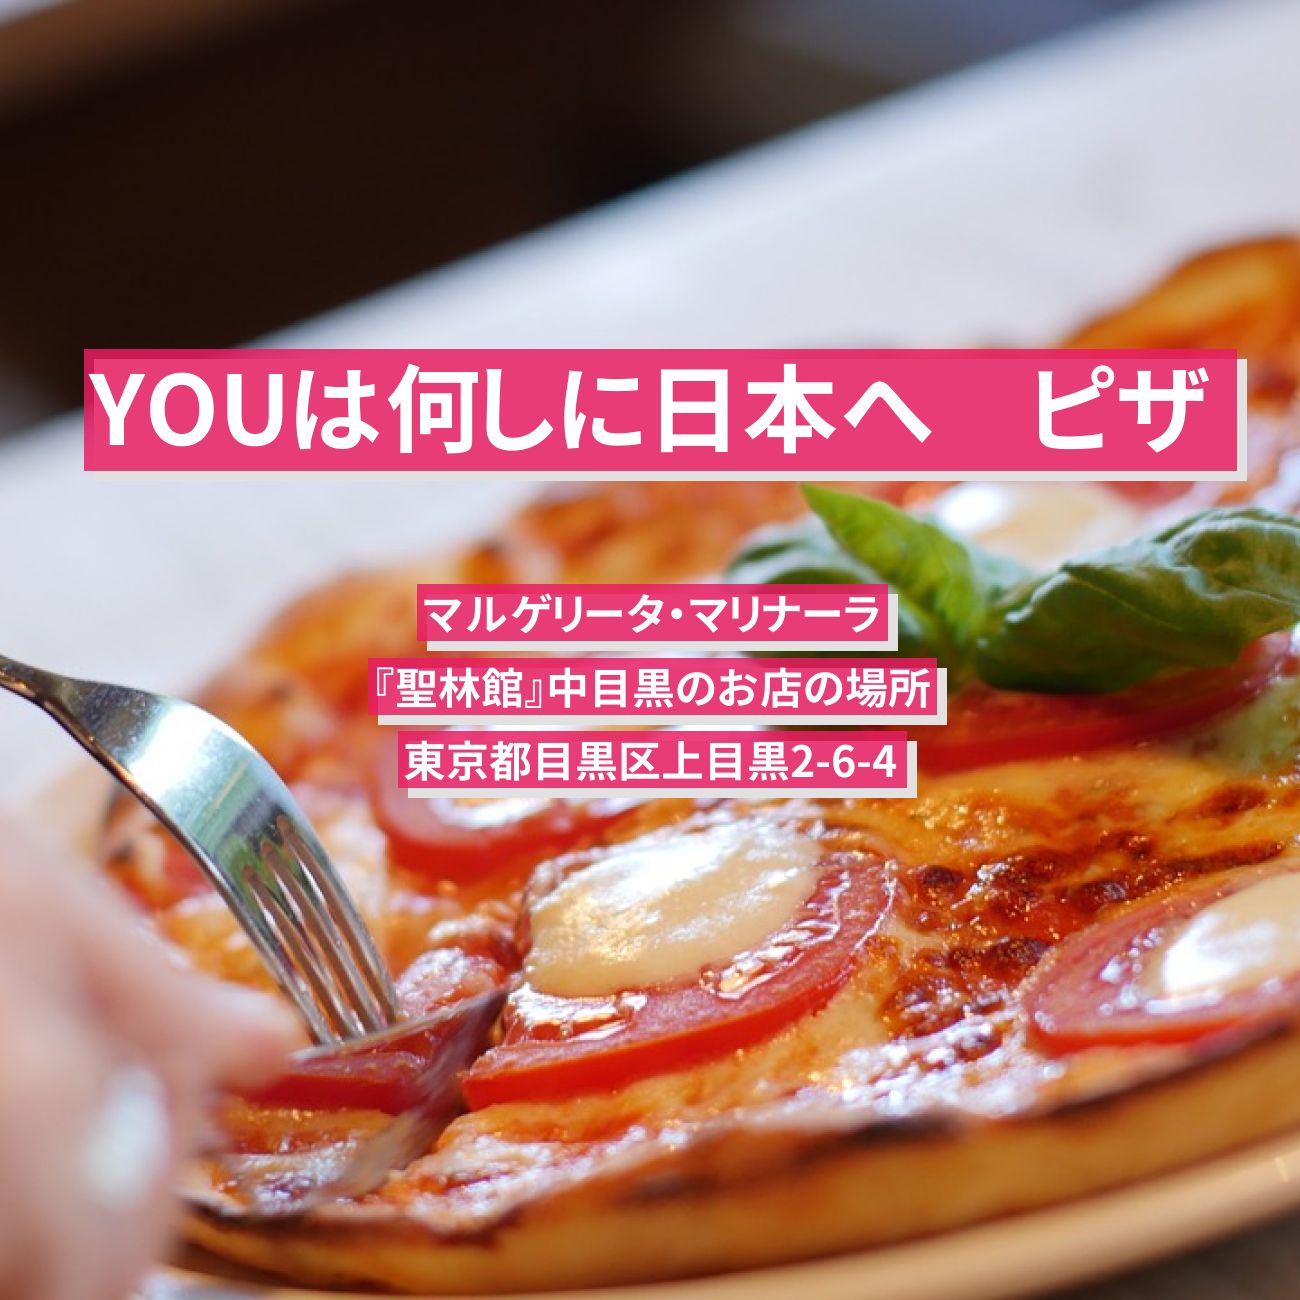 【YOUは何しに日本へ】ピザ(マルゲリータ・マリナーラ)『聖林館』中目黒のお店の場所